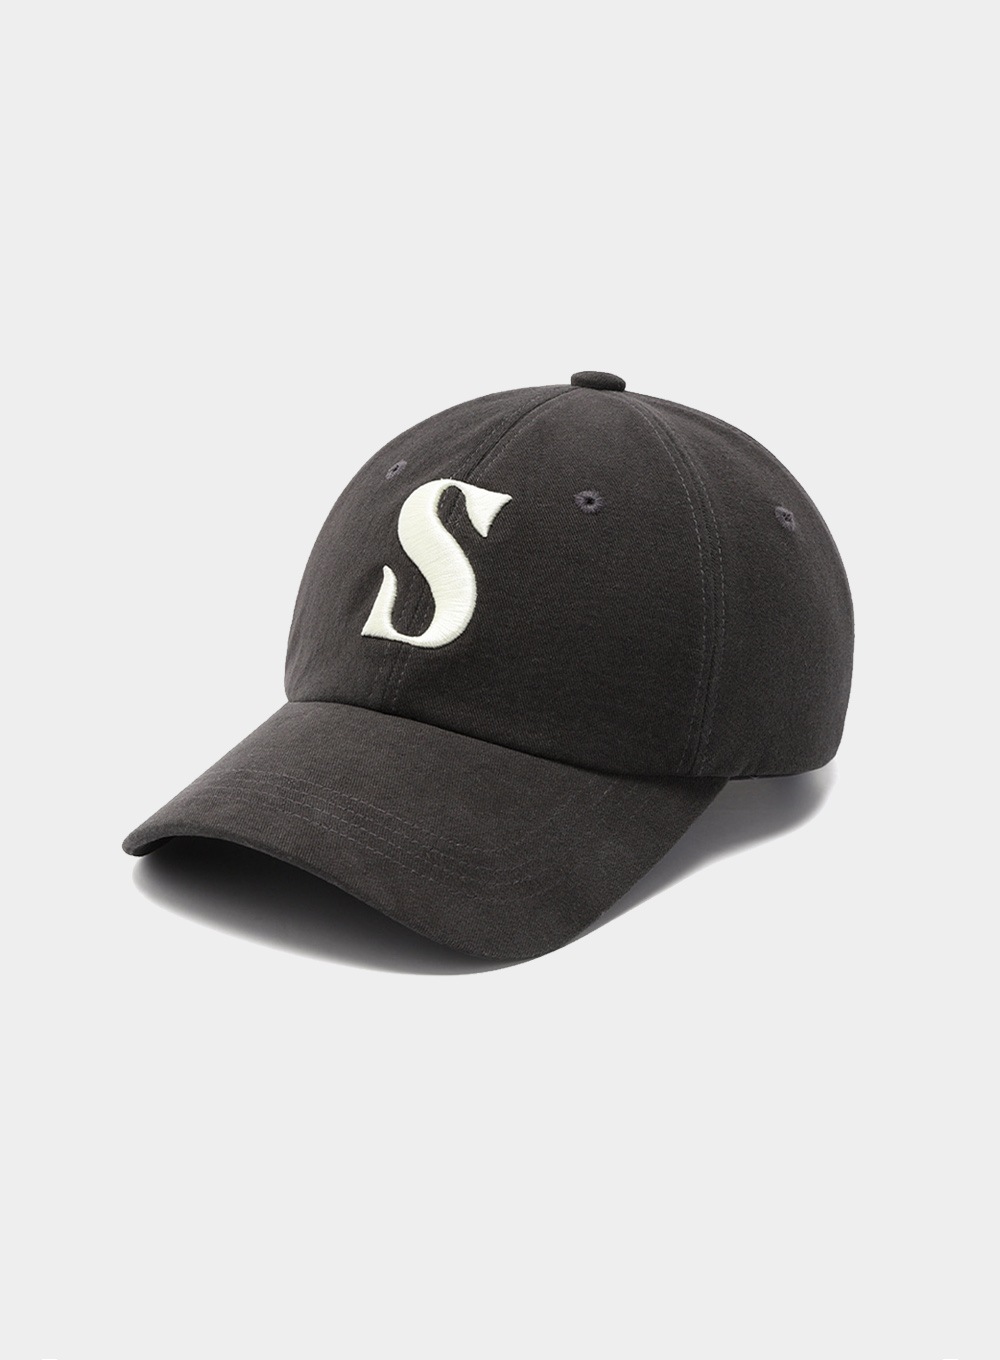 人気のファッションブランド！ 【SATUR】 VINTAGE CASUAL BALL CAP : VINTAGE GRAY 帽子 Size:L